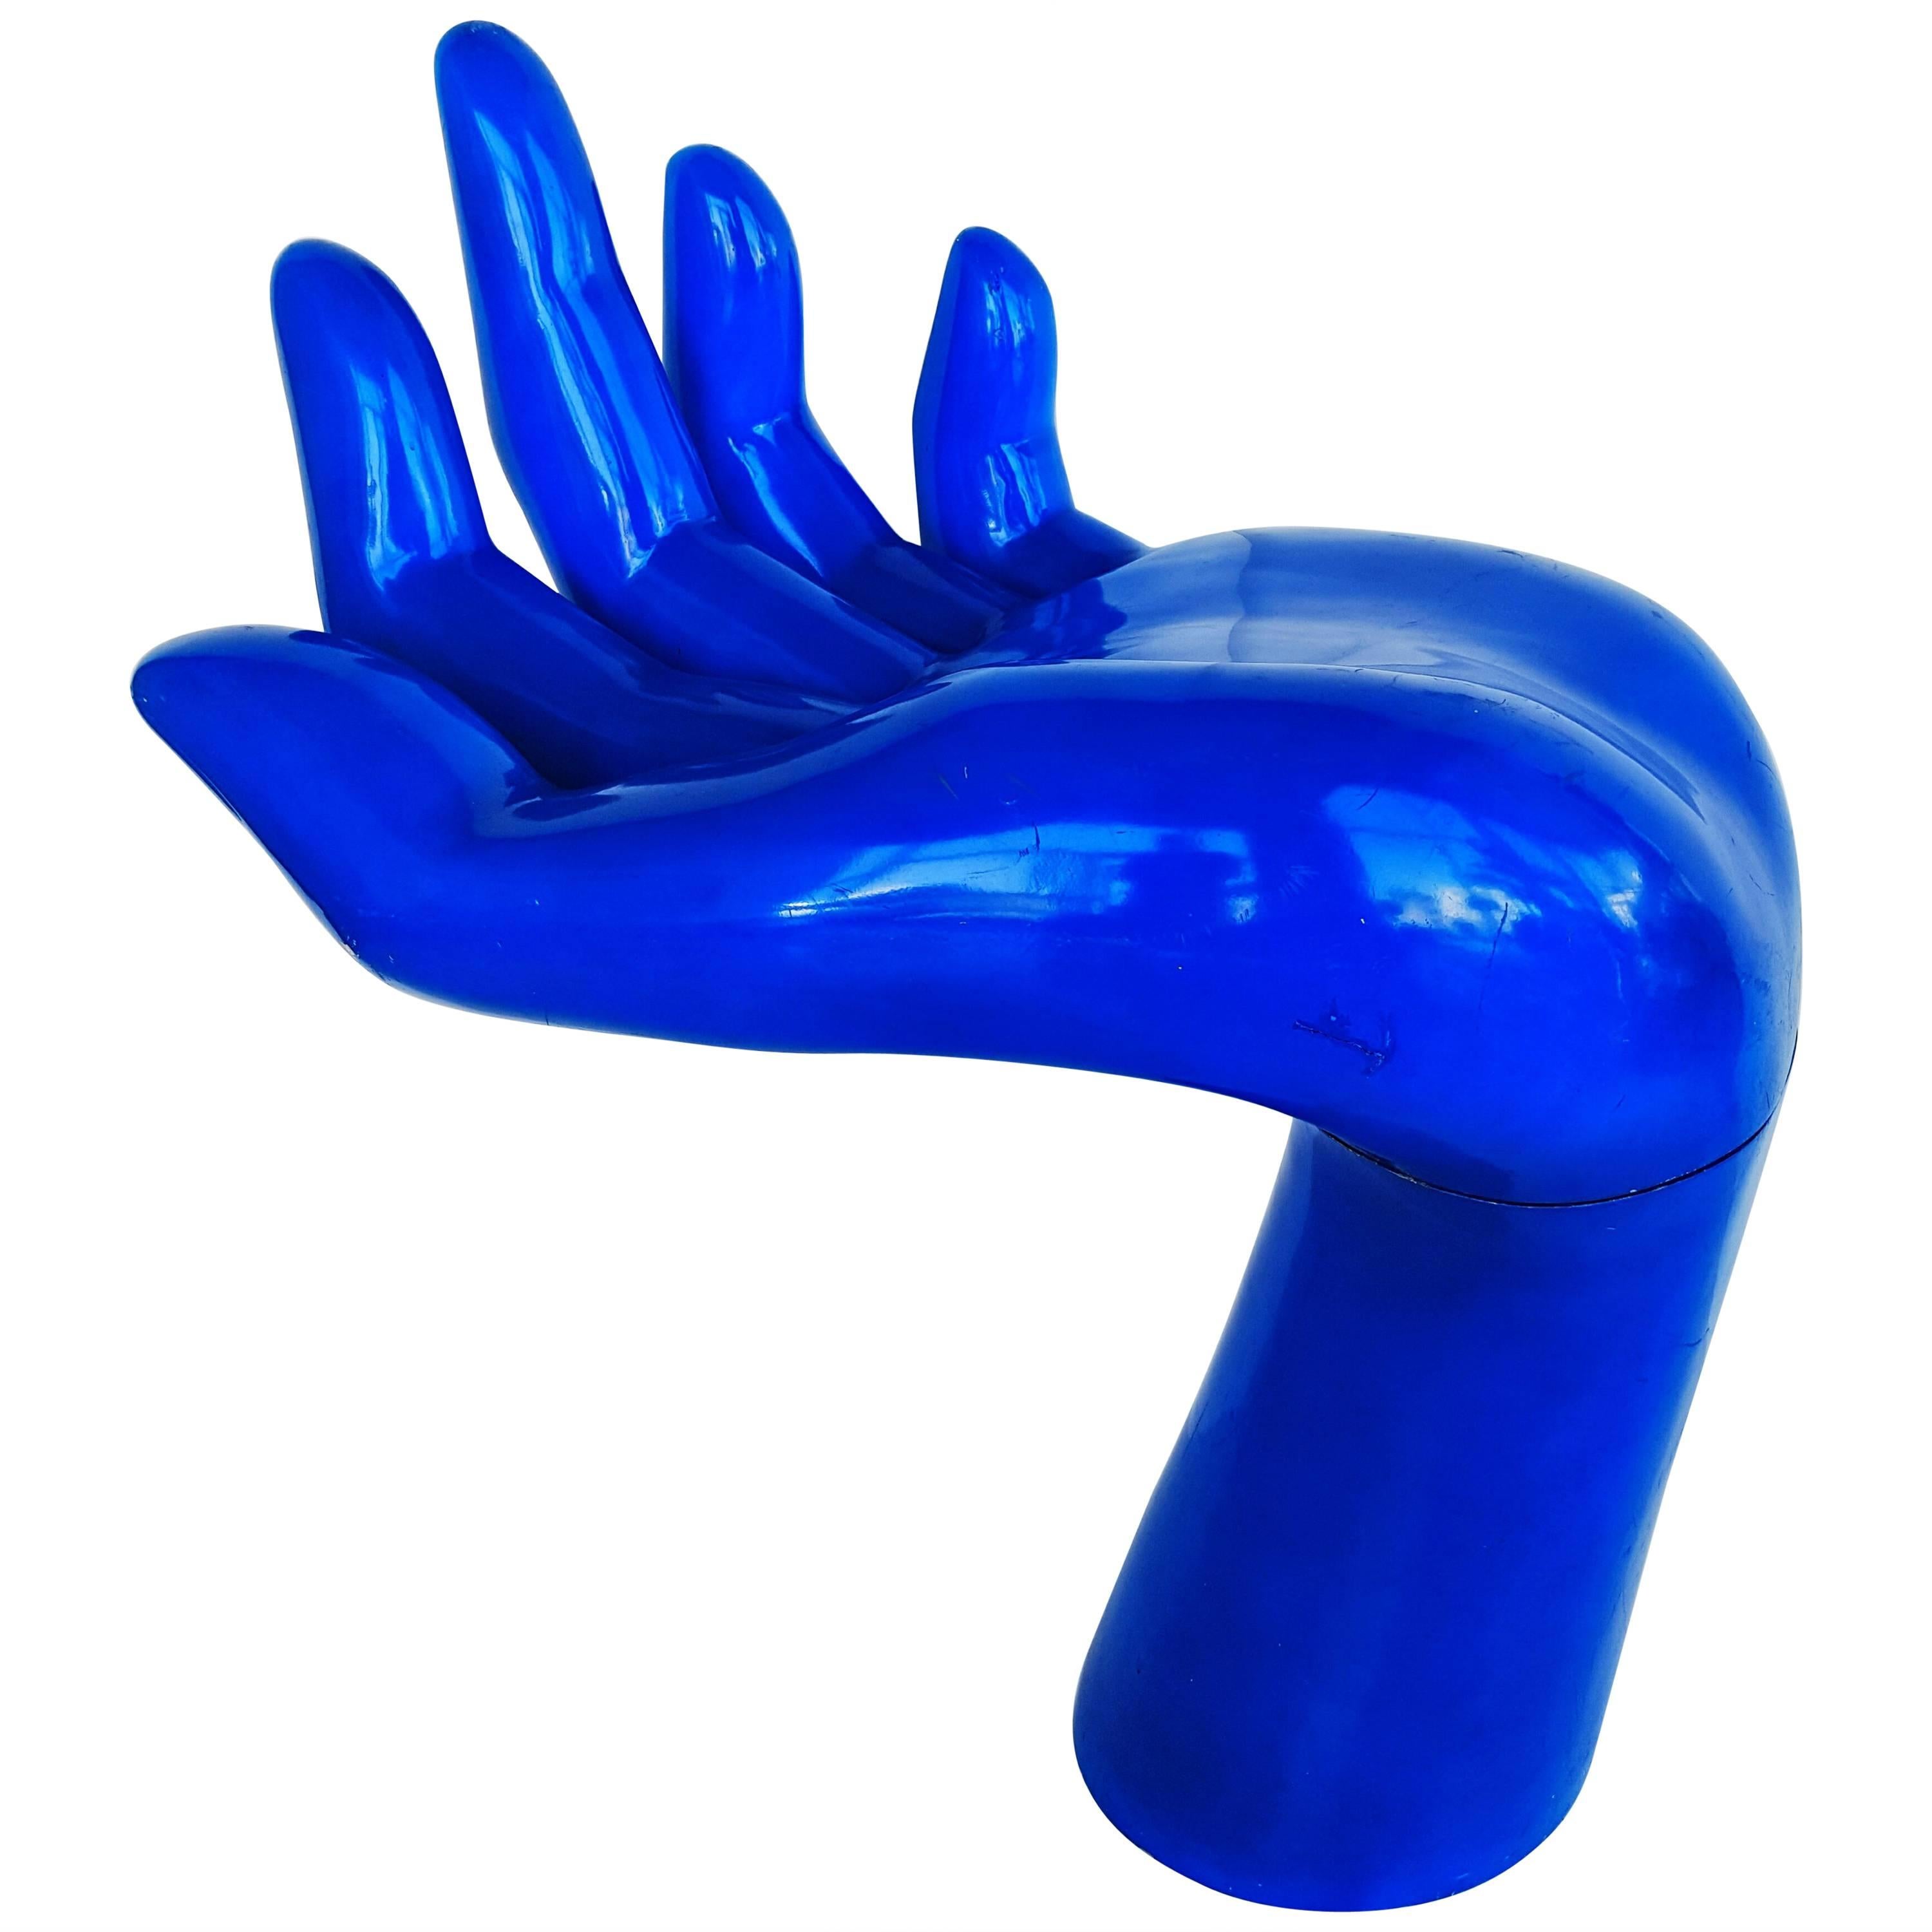 Rare and Monumental Blue Indigo Hand, 1970s For Sale